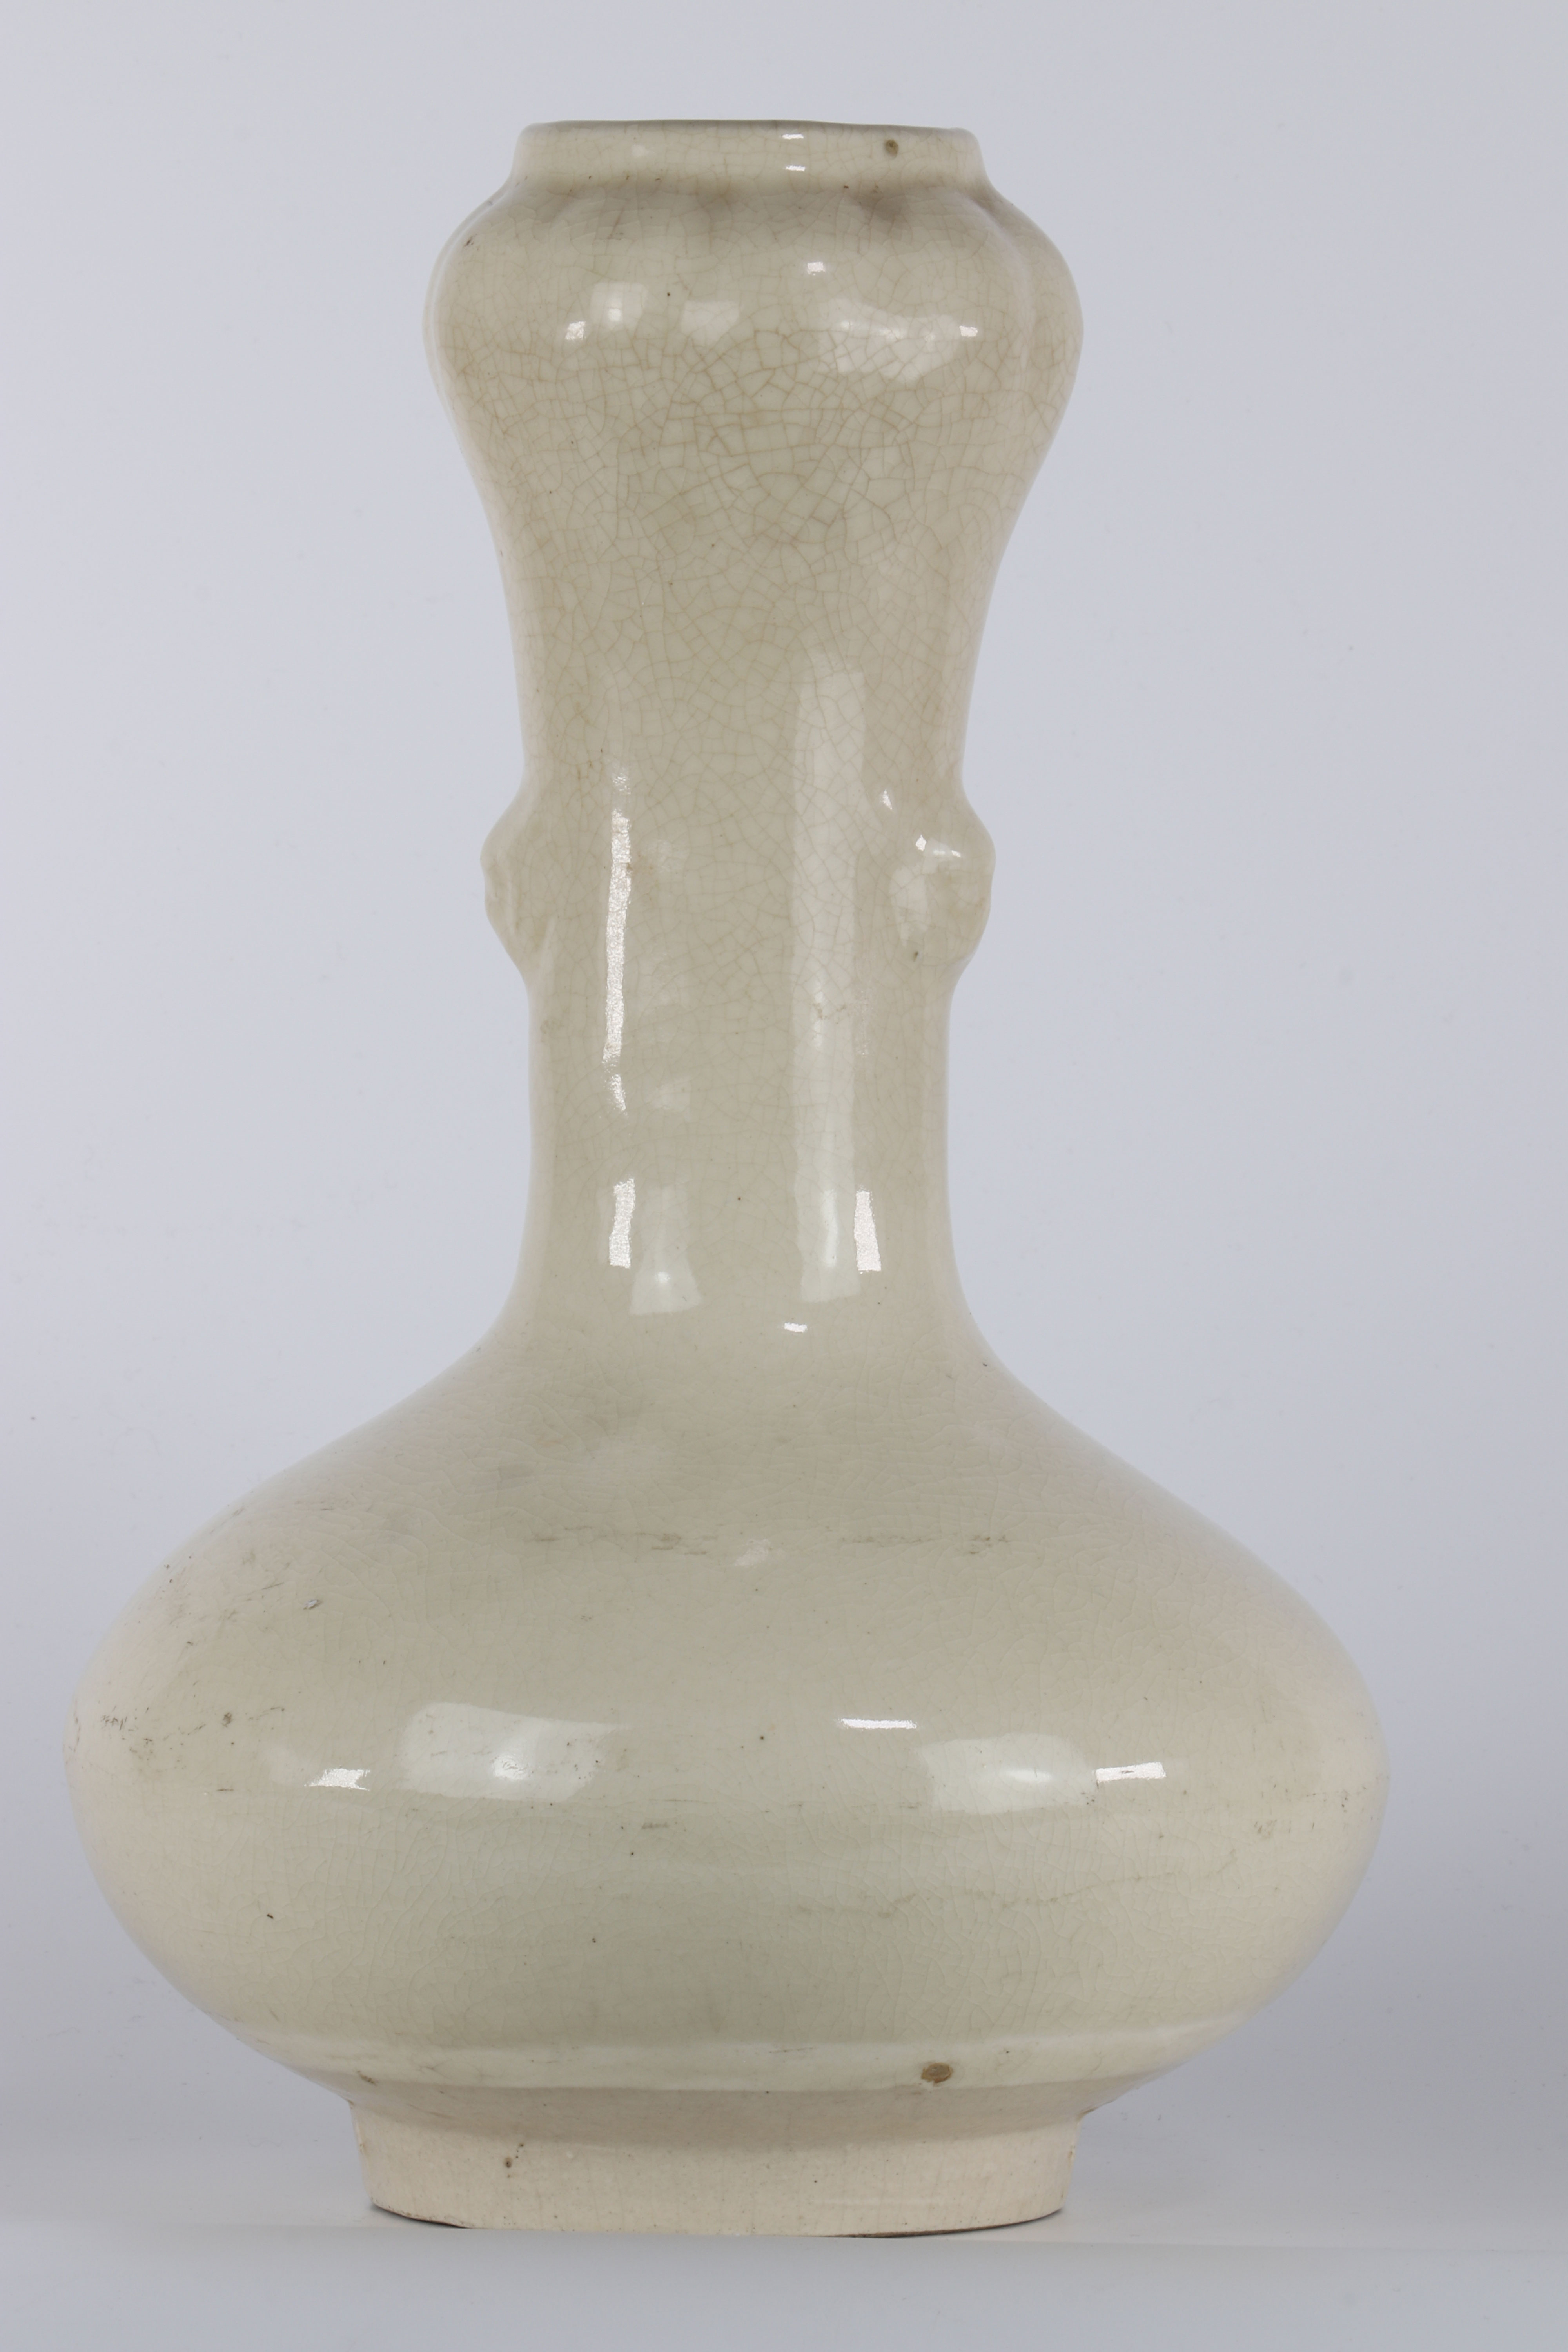 Vase en porcelaine de chine blanc craquelé époque Qing - Région: CHINE - [...]